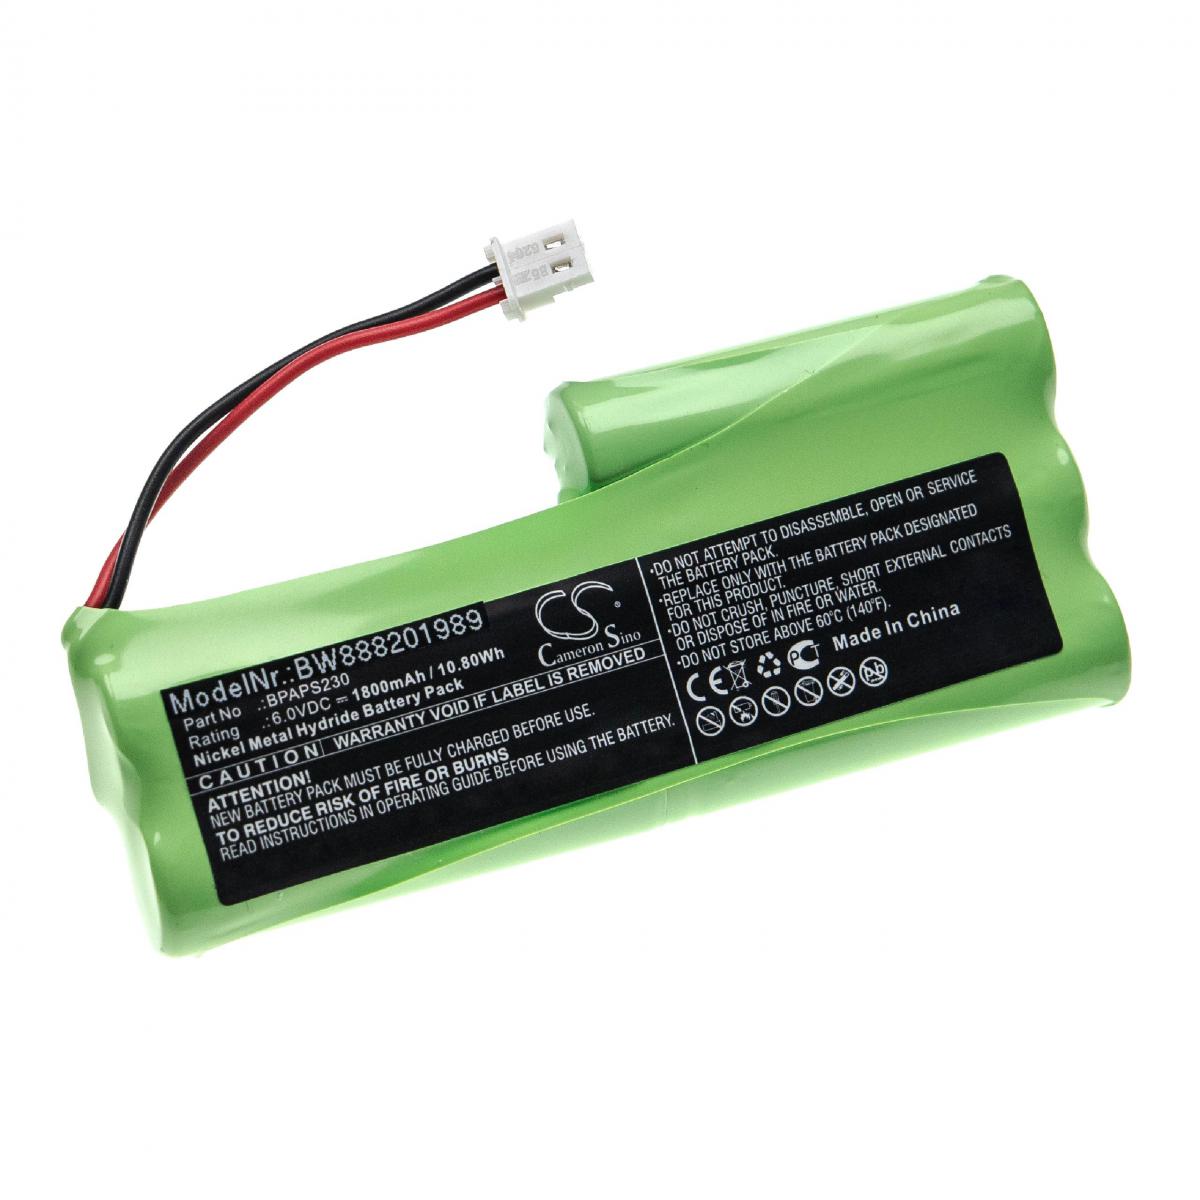 Vhbw - vhbw Batterie remplace Velleman BPAPS230 pour outil de mesure (1800mAh, 6V, NiMH) - Piles rechargeables